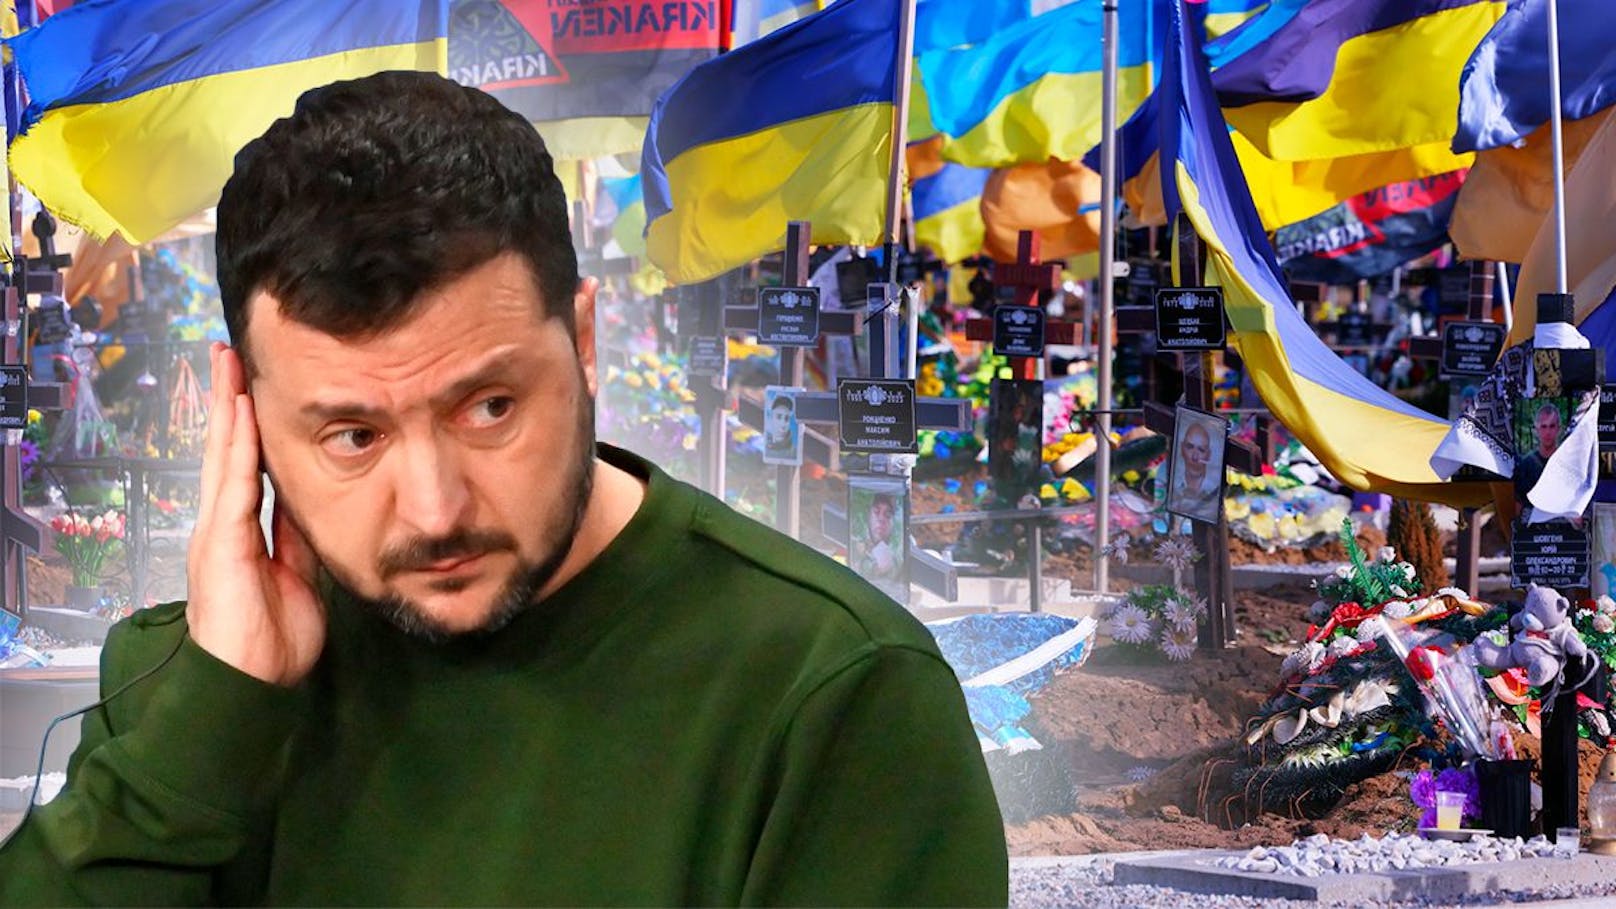 Selenski macht horrende Verluste der Ukraine öffentlich